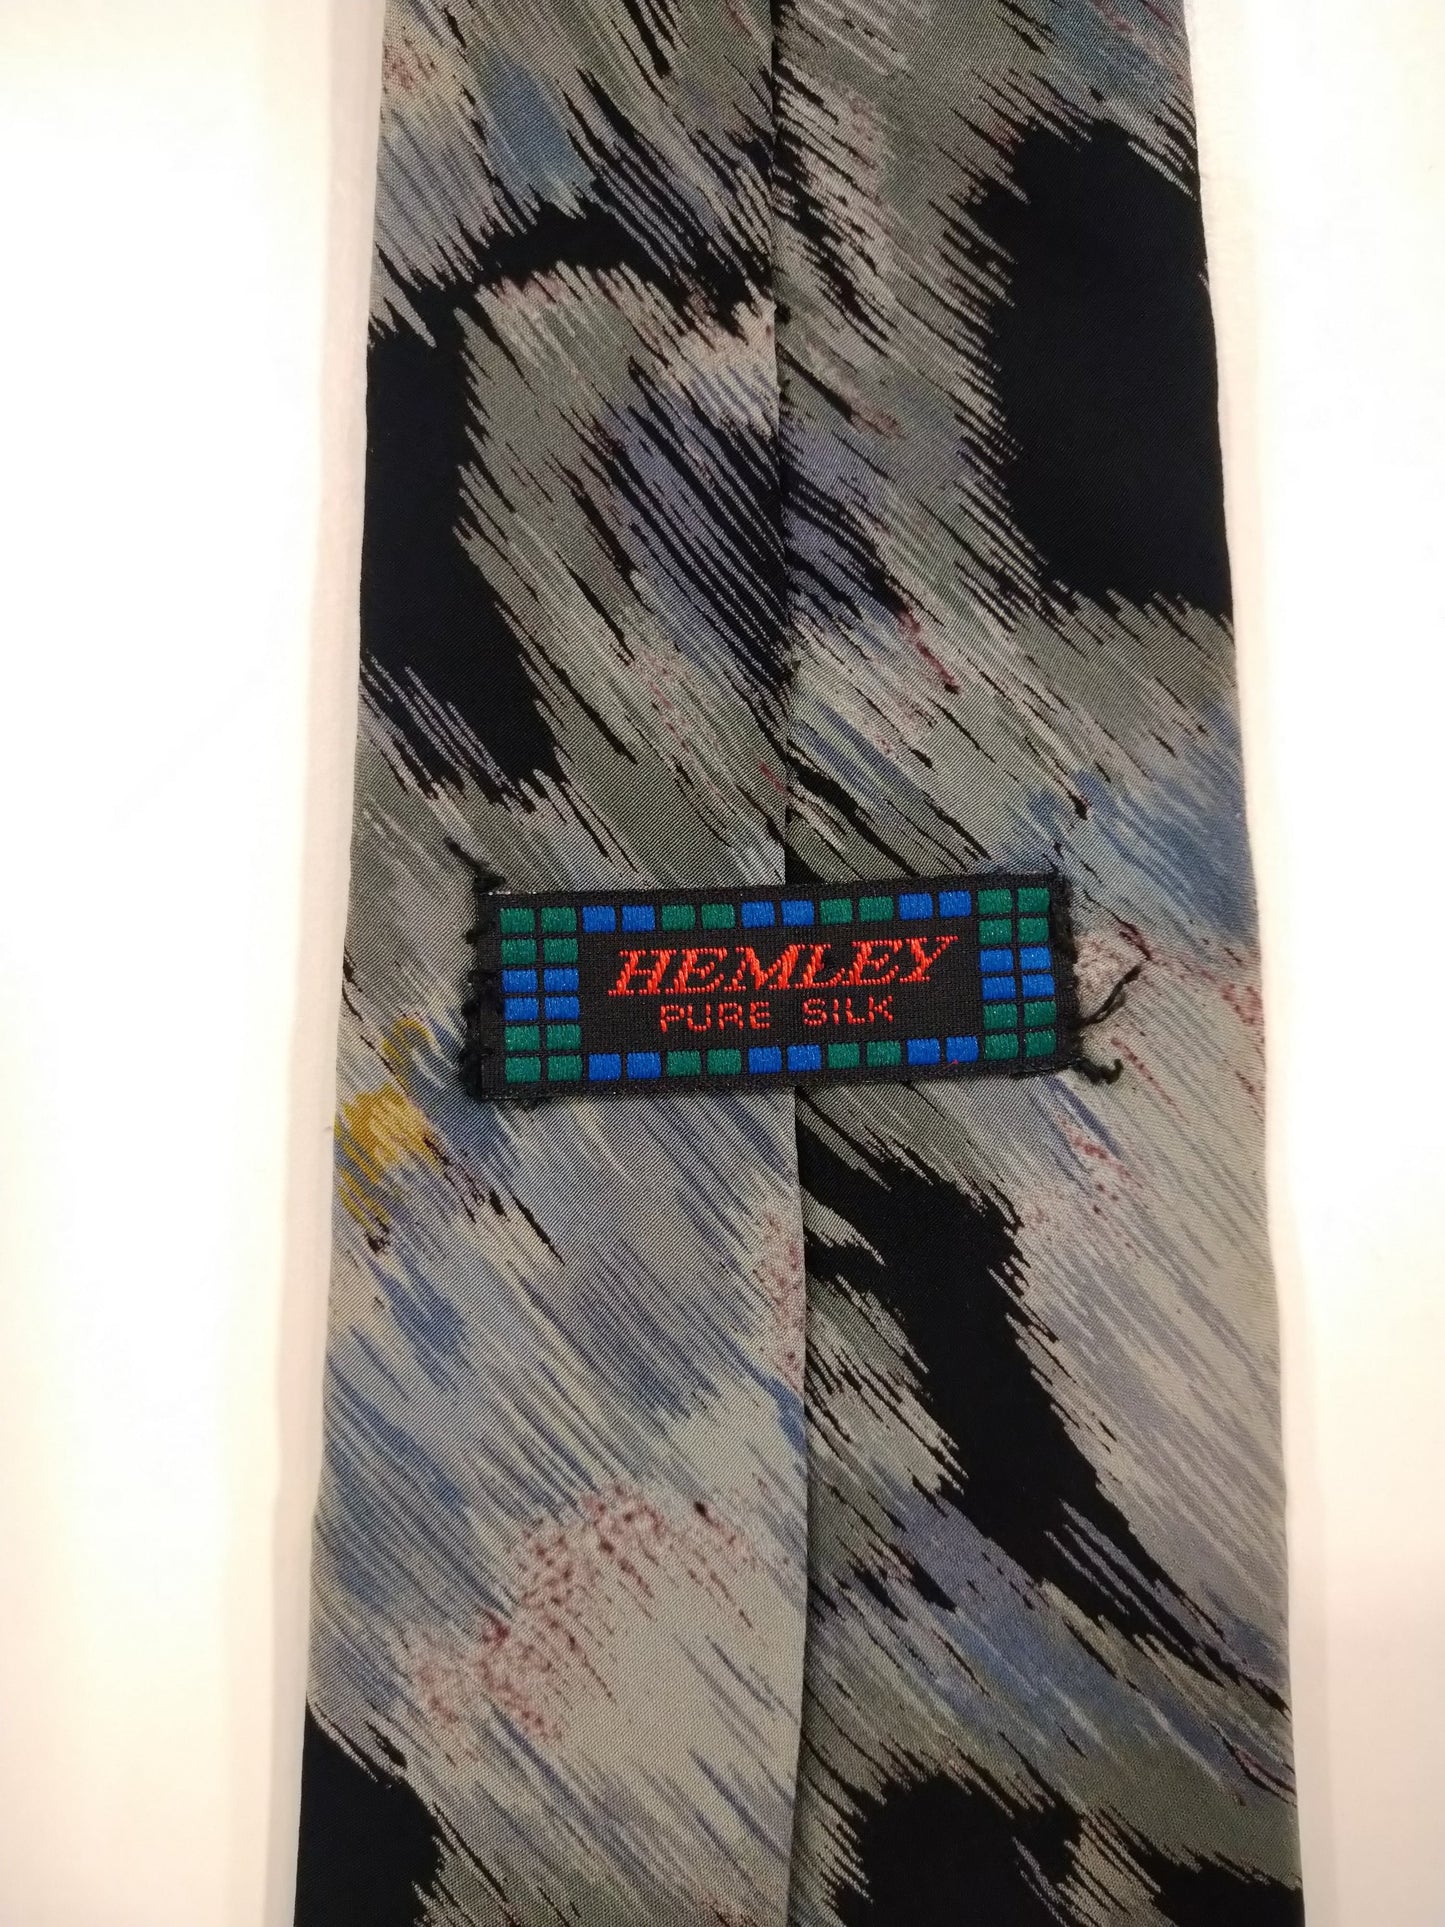 Hemley side tie. Nice motif.